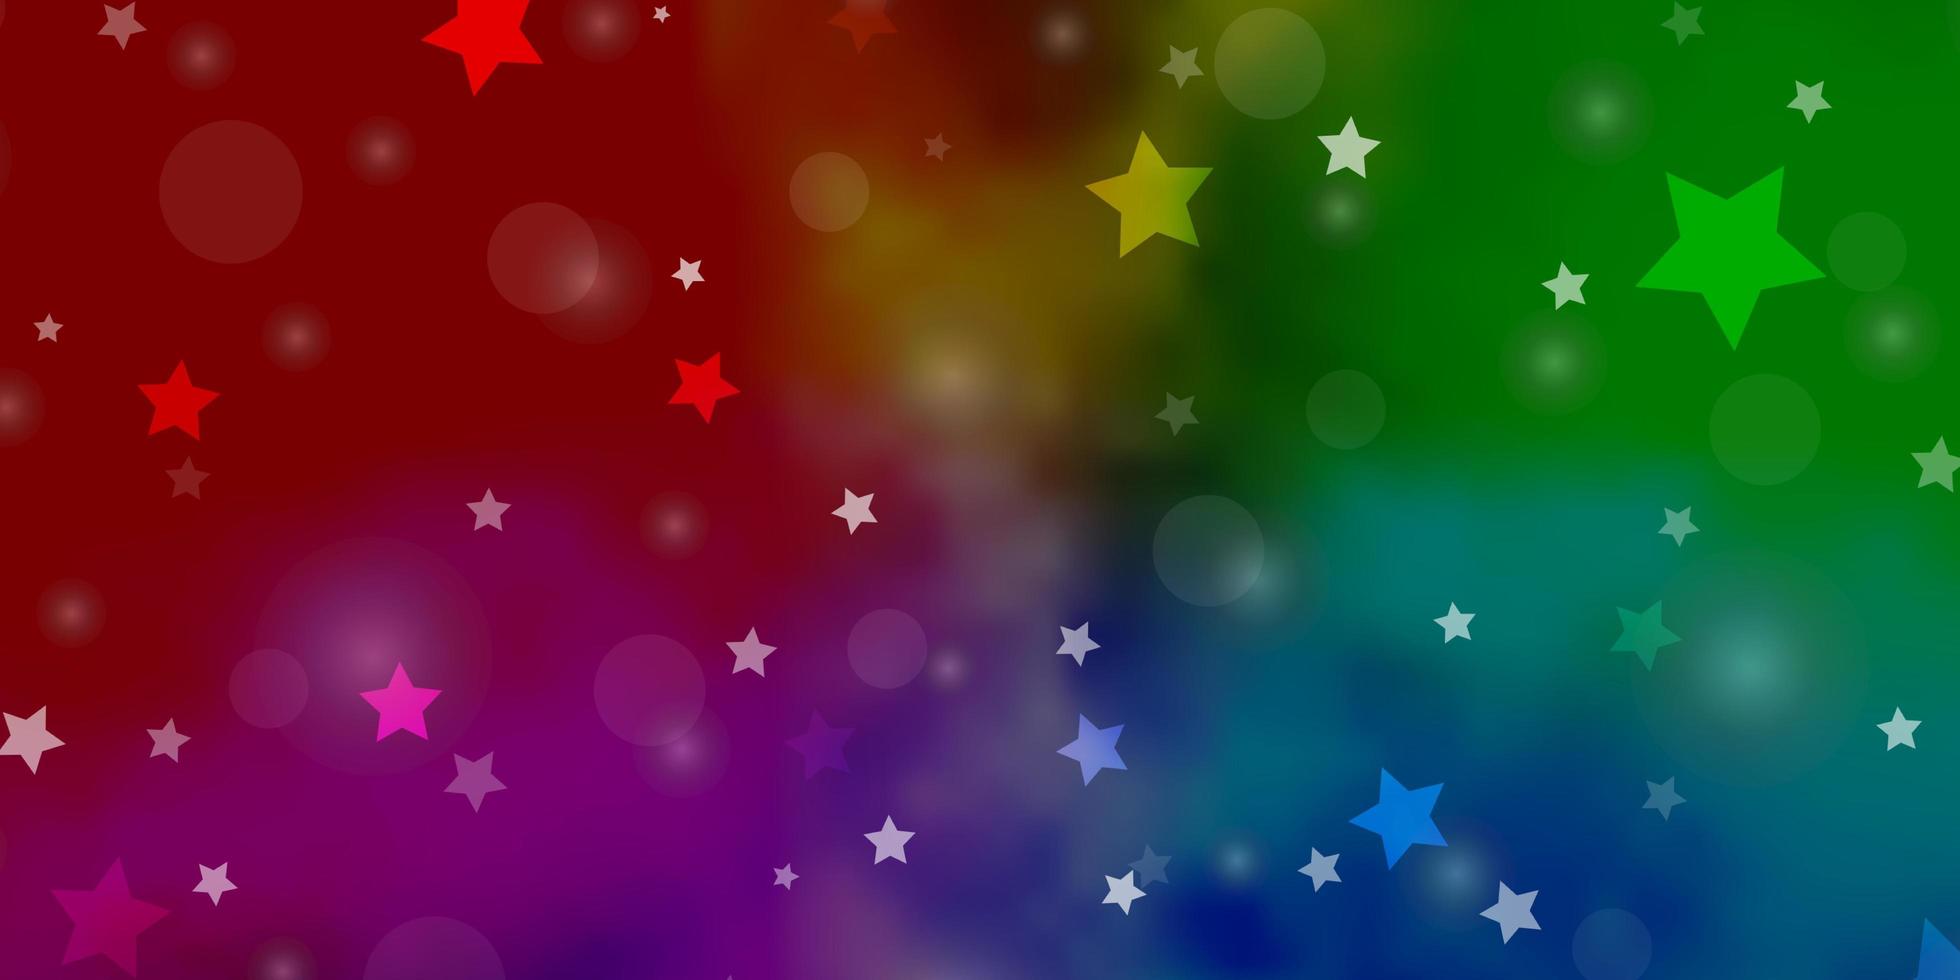 sfondo vettoriale multicolore chiaro con cerchi, stelle. illustrazione astratta con macchie colorate, stelle. design per carta da parati, produttori di tessuti.